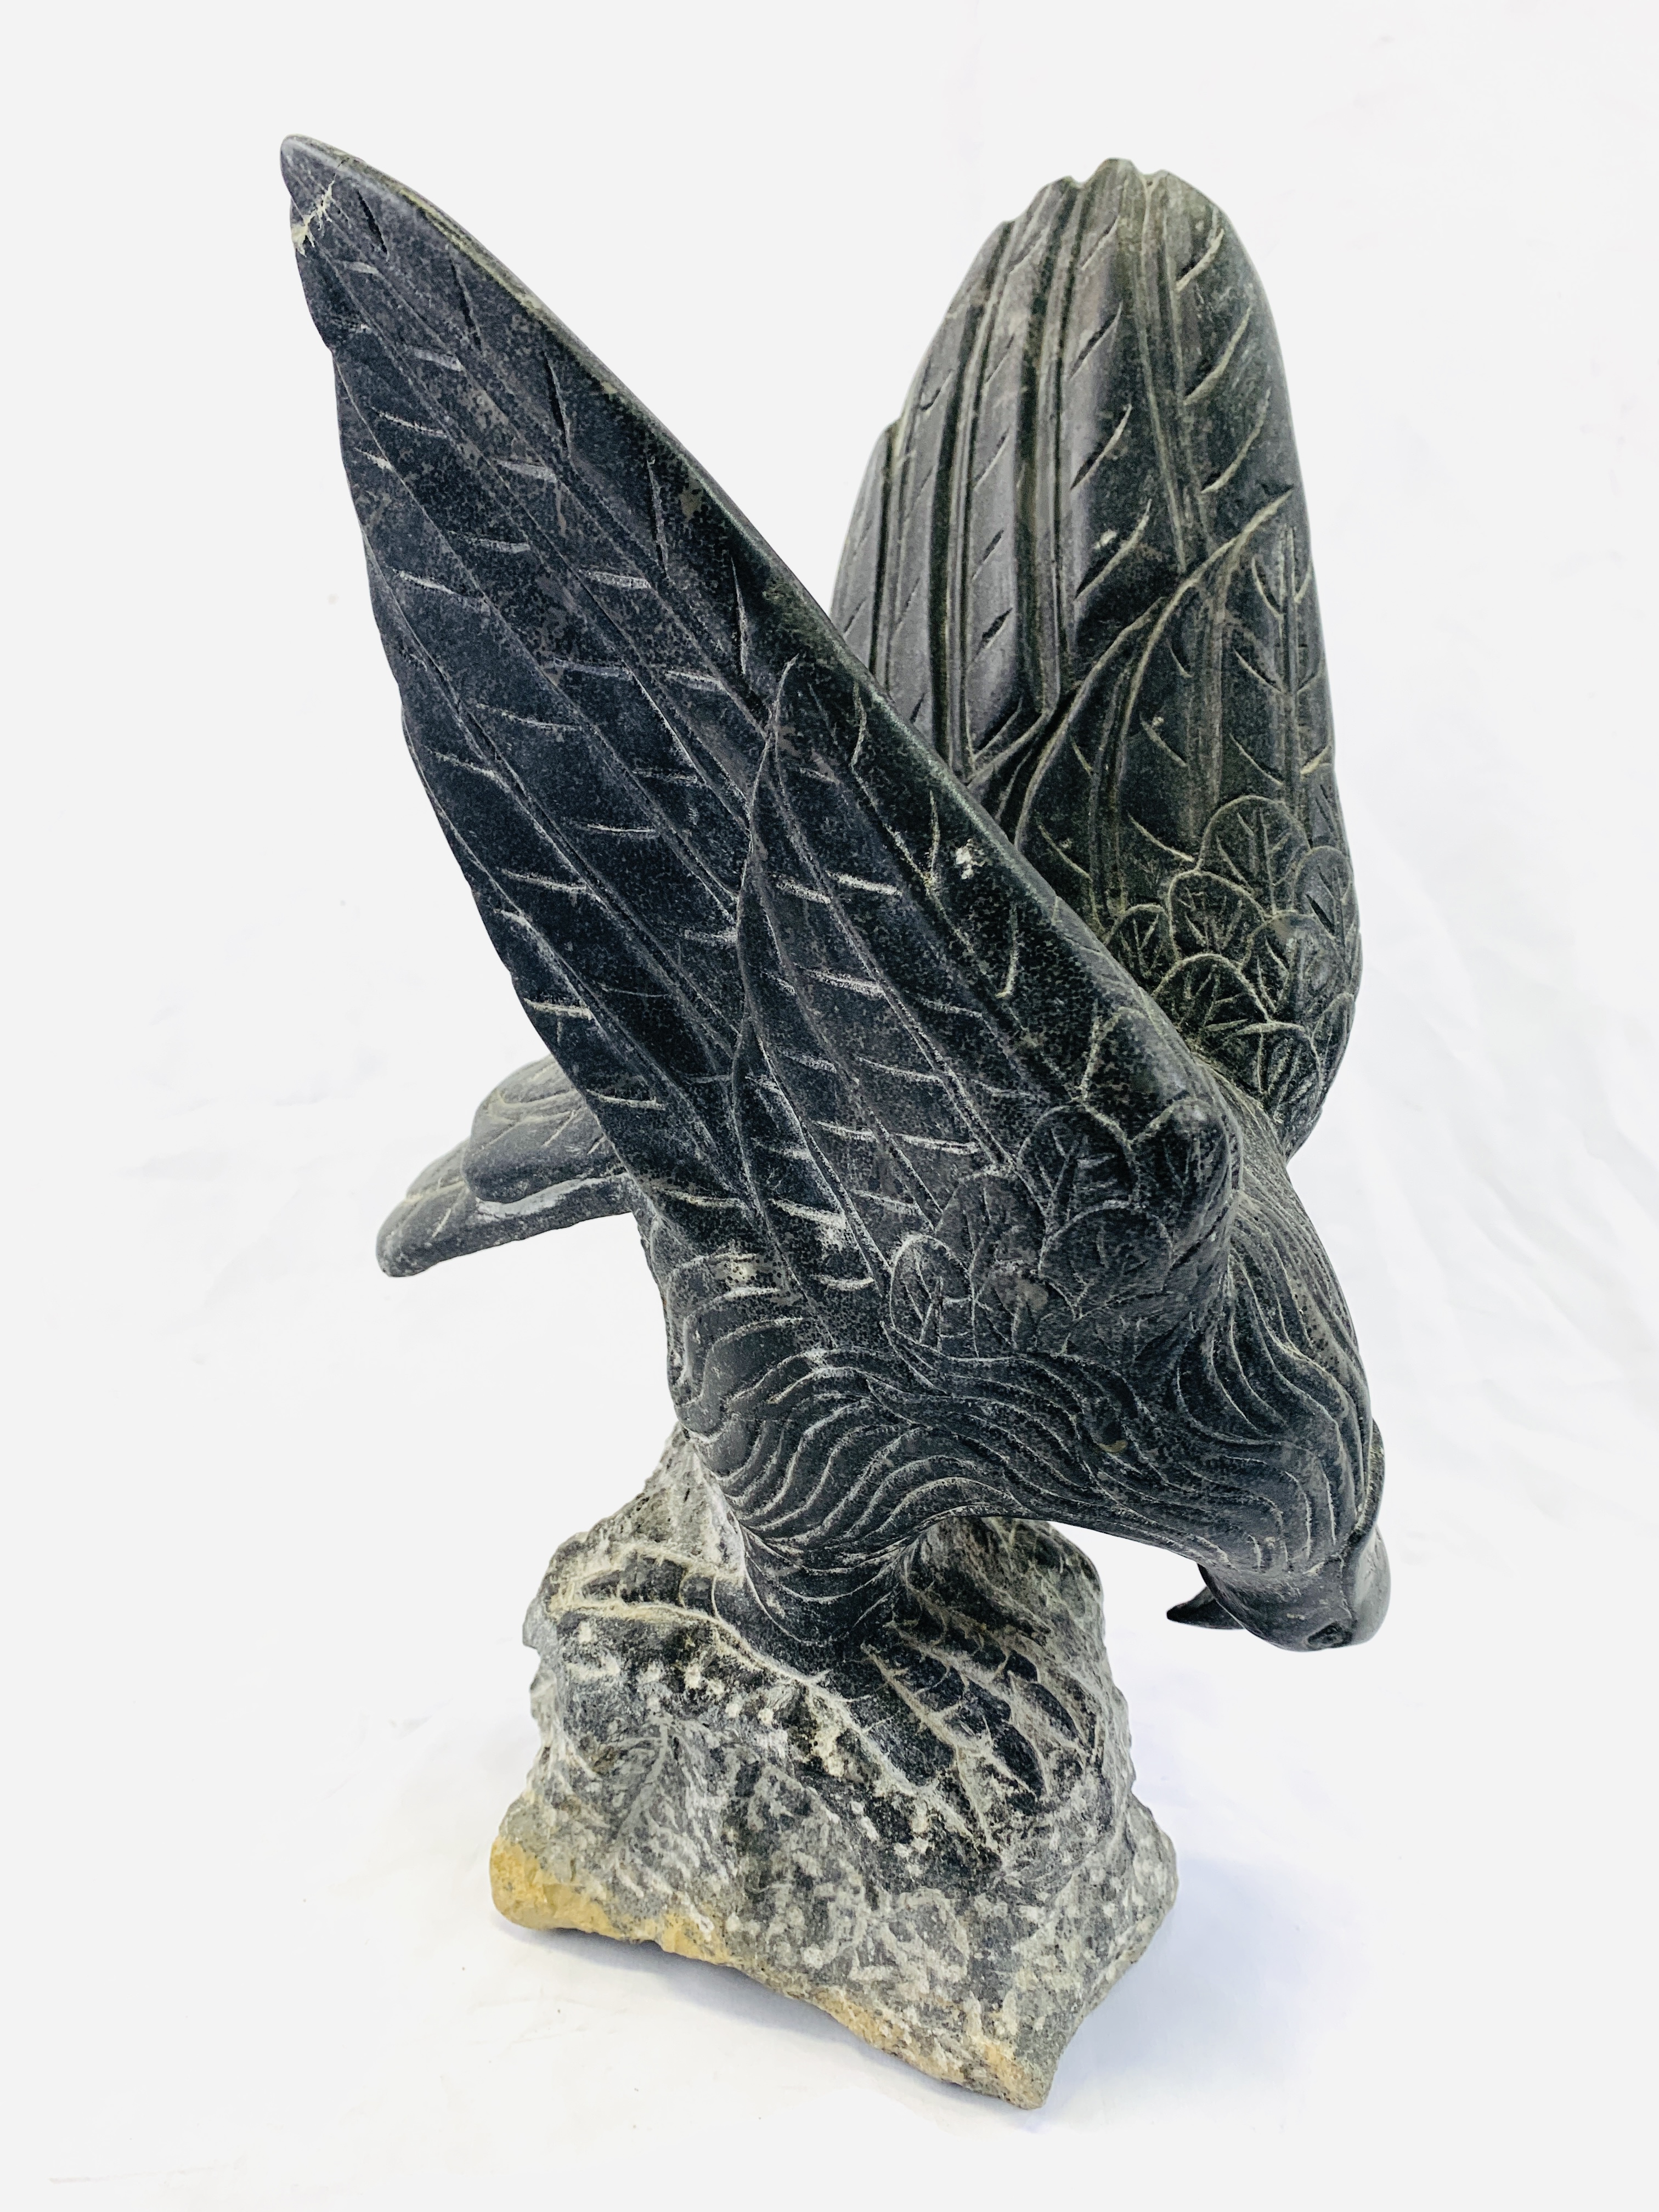 A stone eagle